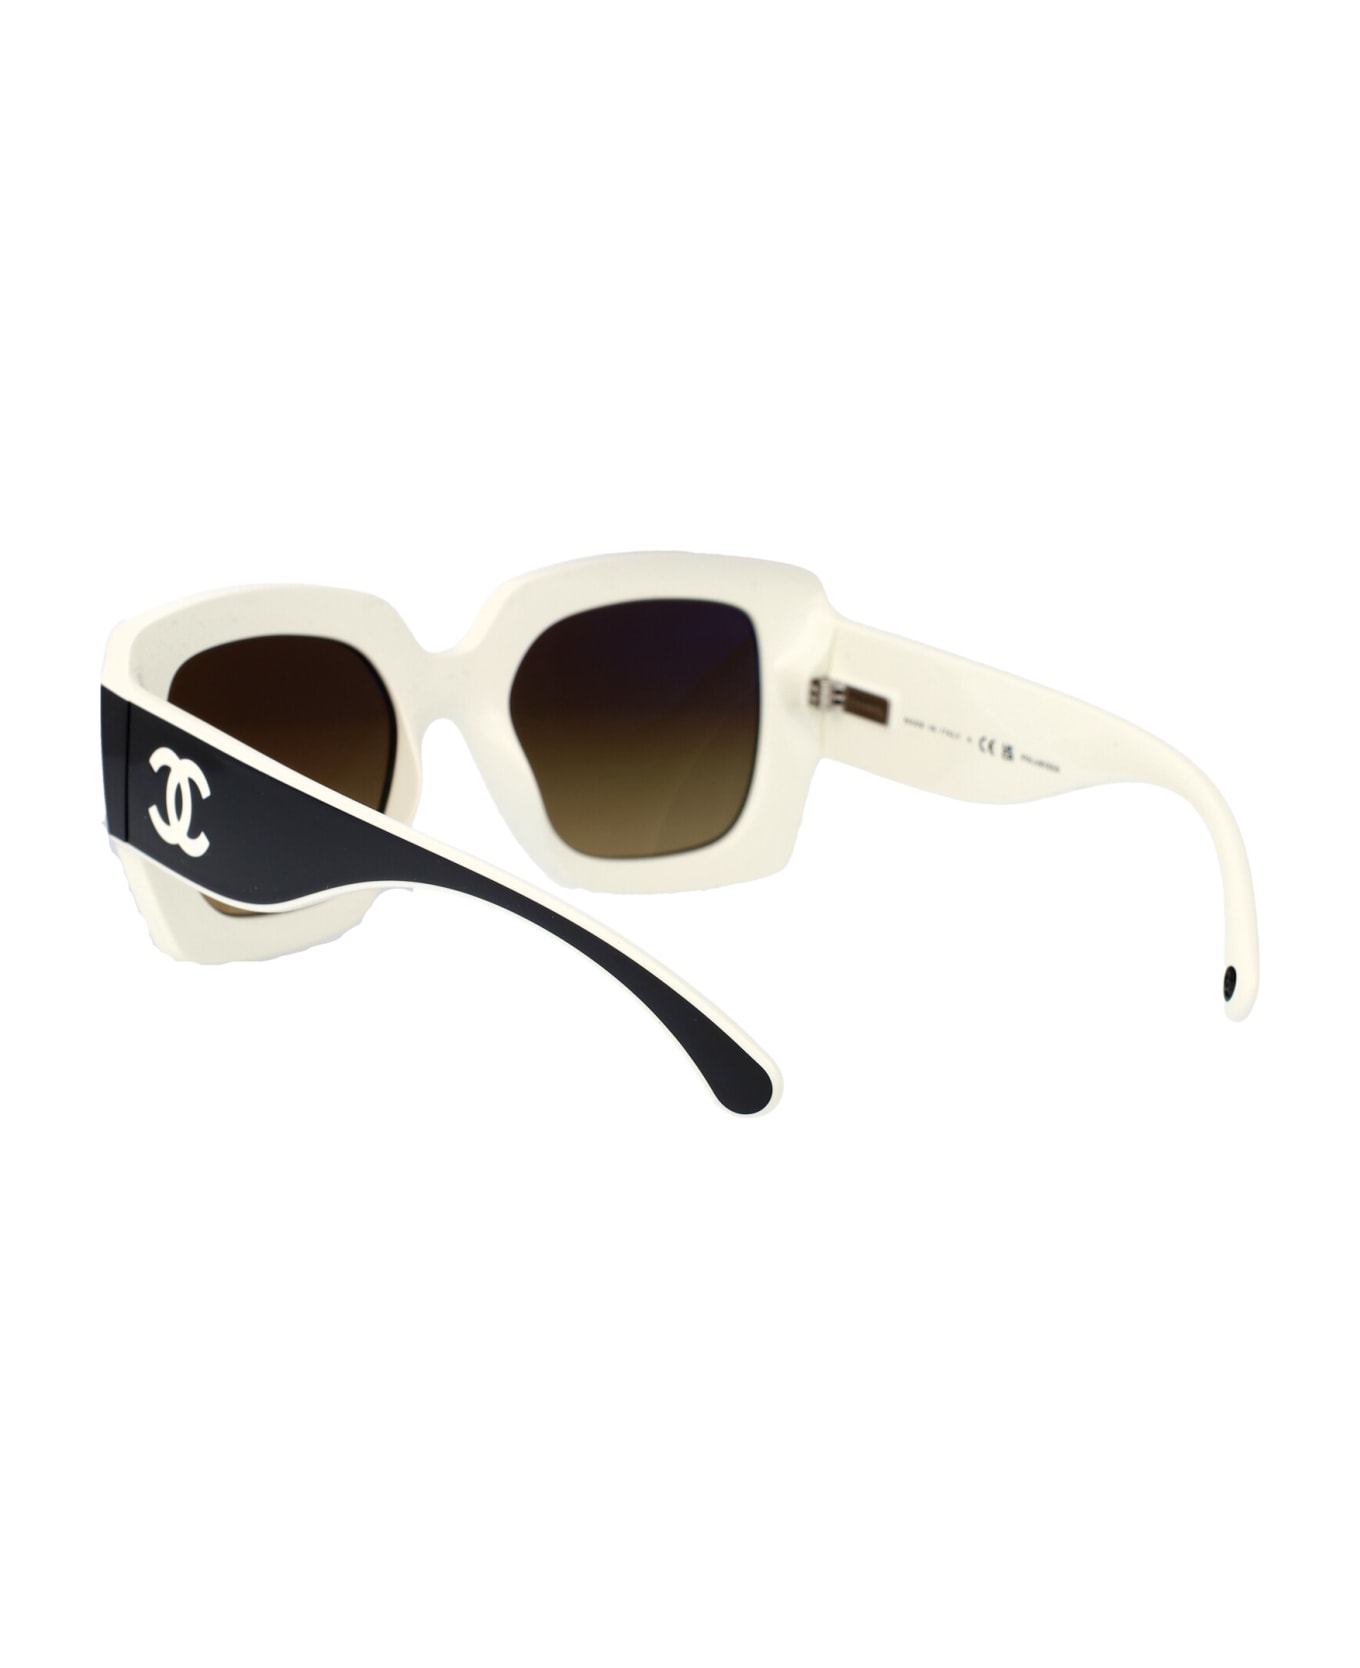 Chanel 0ch6059 Sunglasses - 1656M2 BLACK